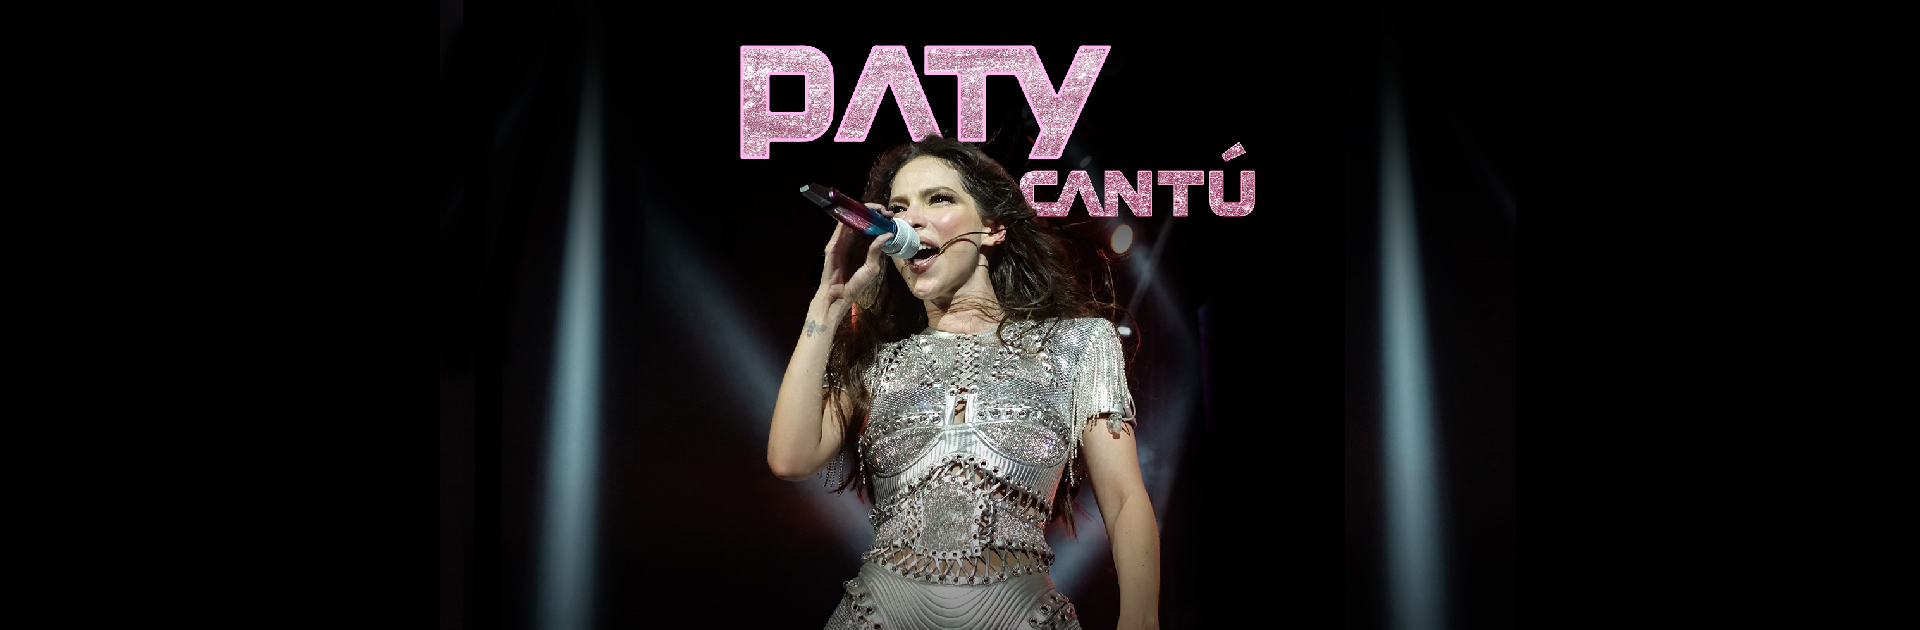 Paty Cantú